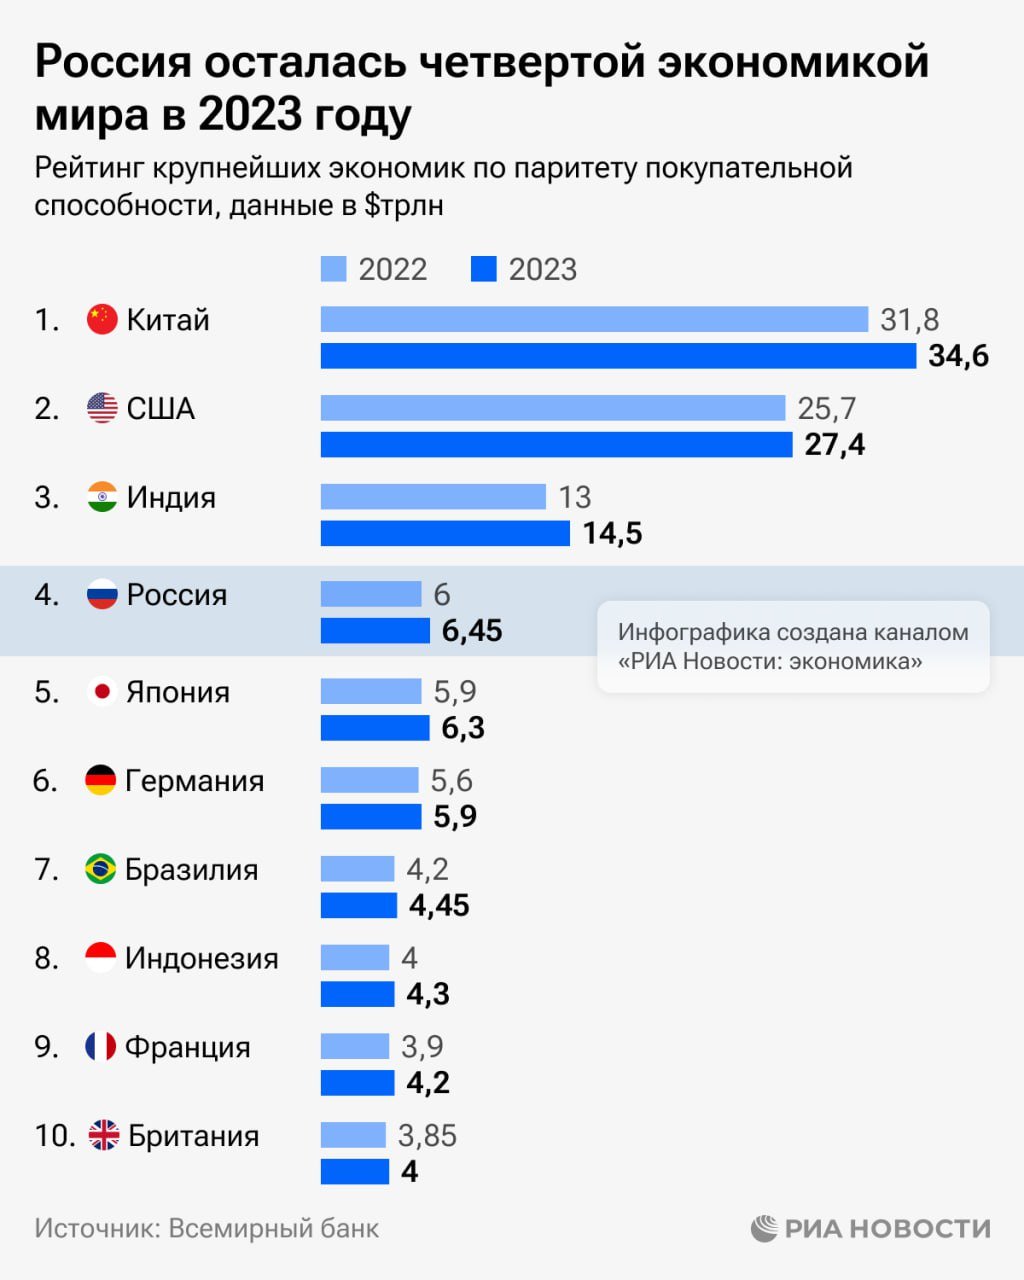 Всемирный банк подтвердил, что Россия в 2023 году осталась четвертой экономикой мира.  Российский ВВП по паритету покупательной способности вырос за год почти на 8% - до $6,45 трлн, следует из данных организации, которые изучило РИА Новости.